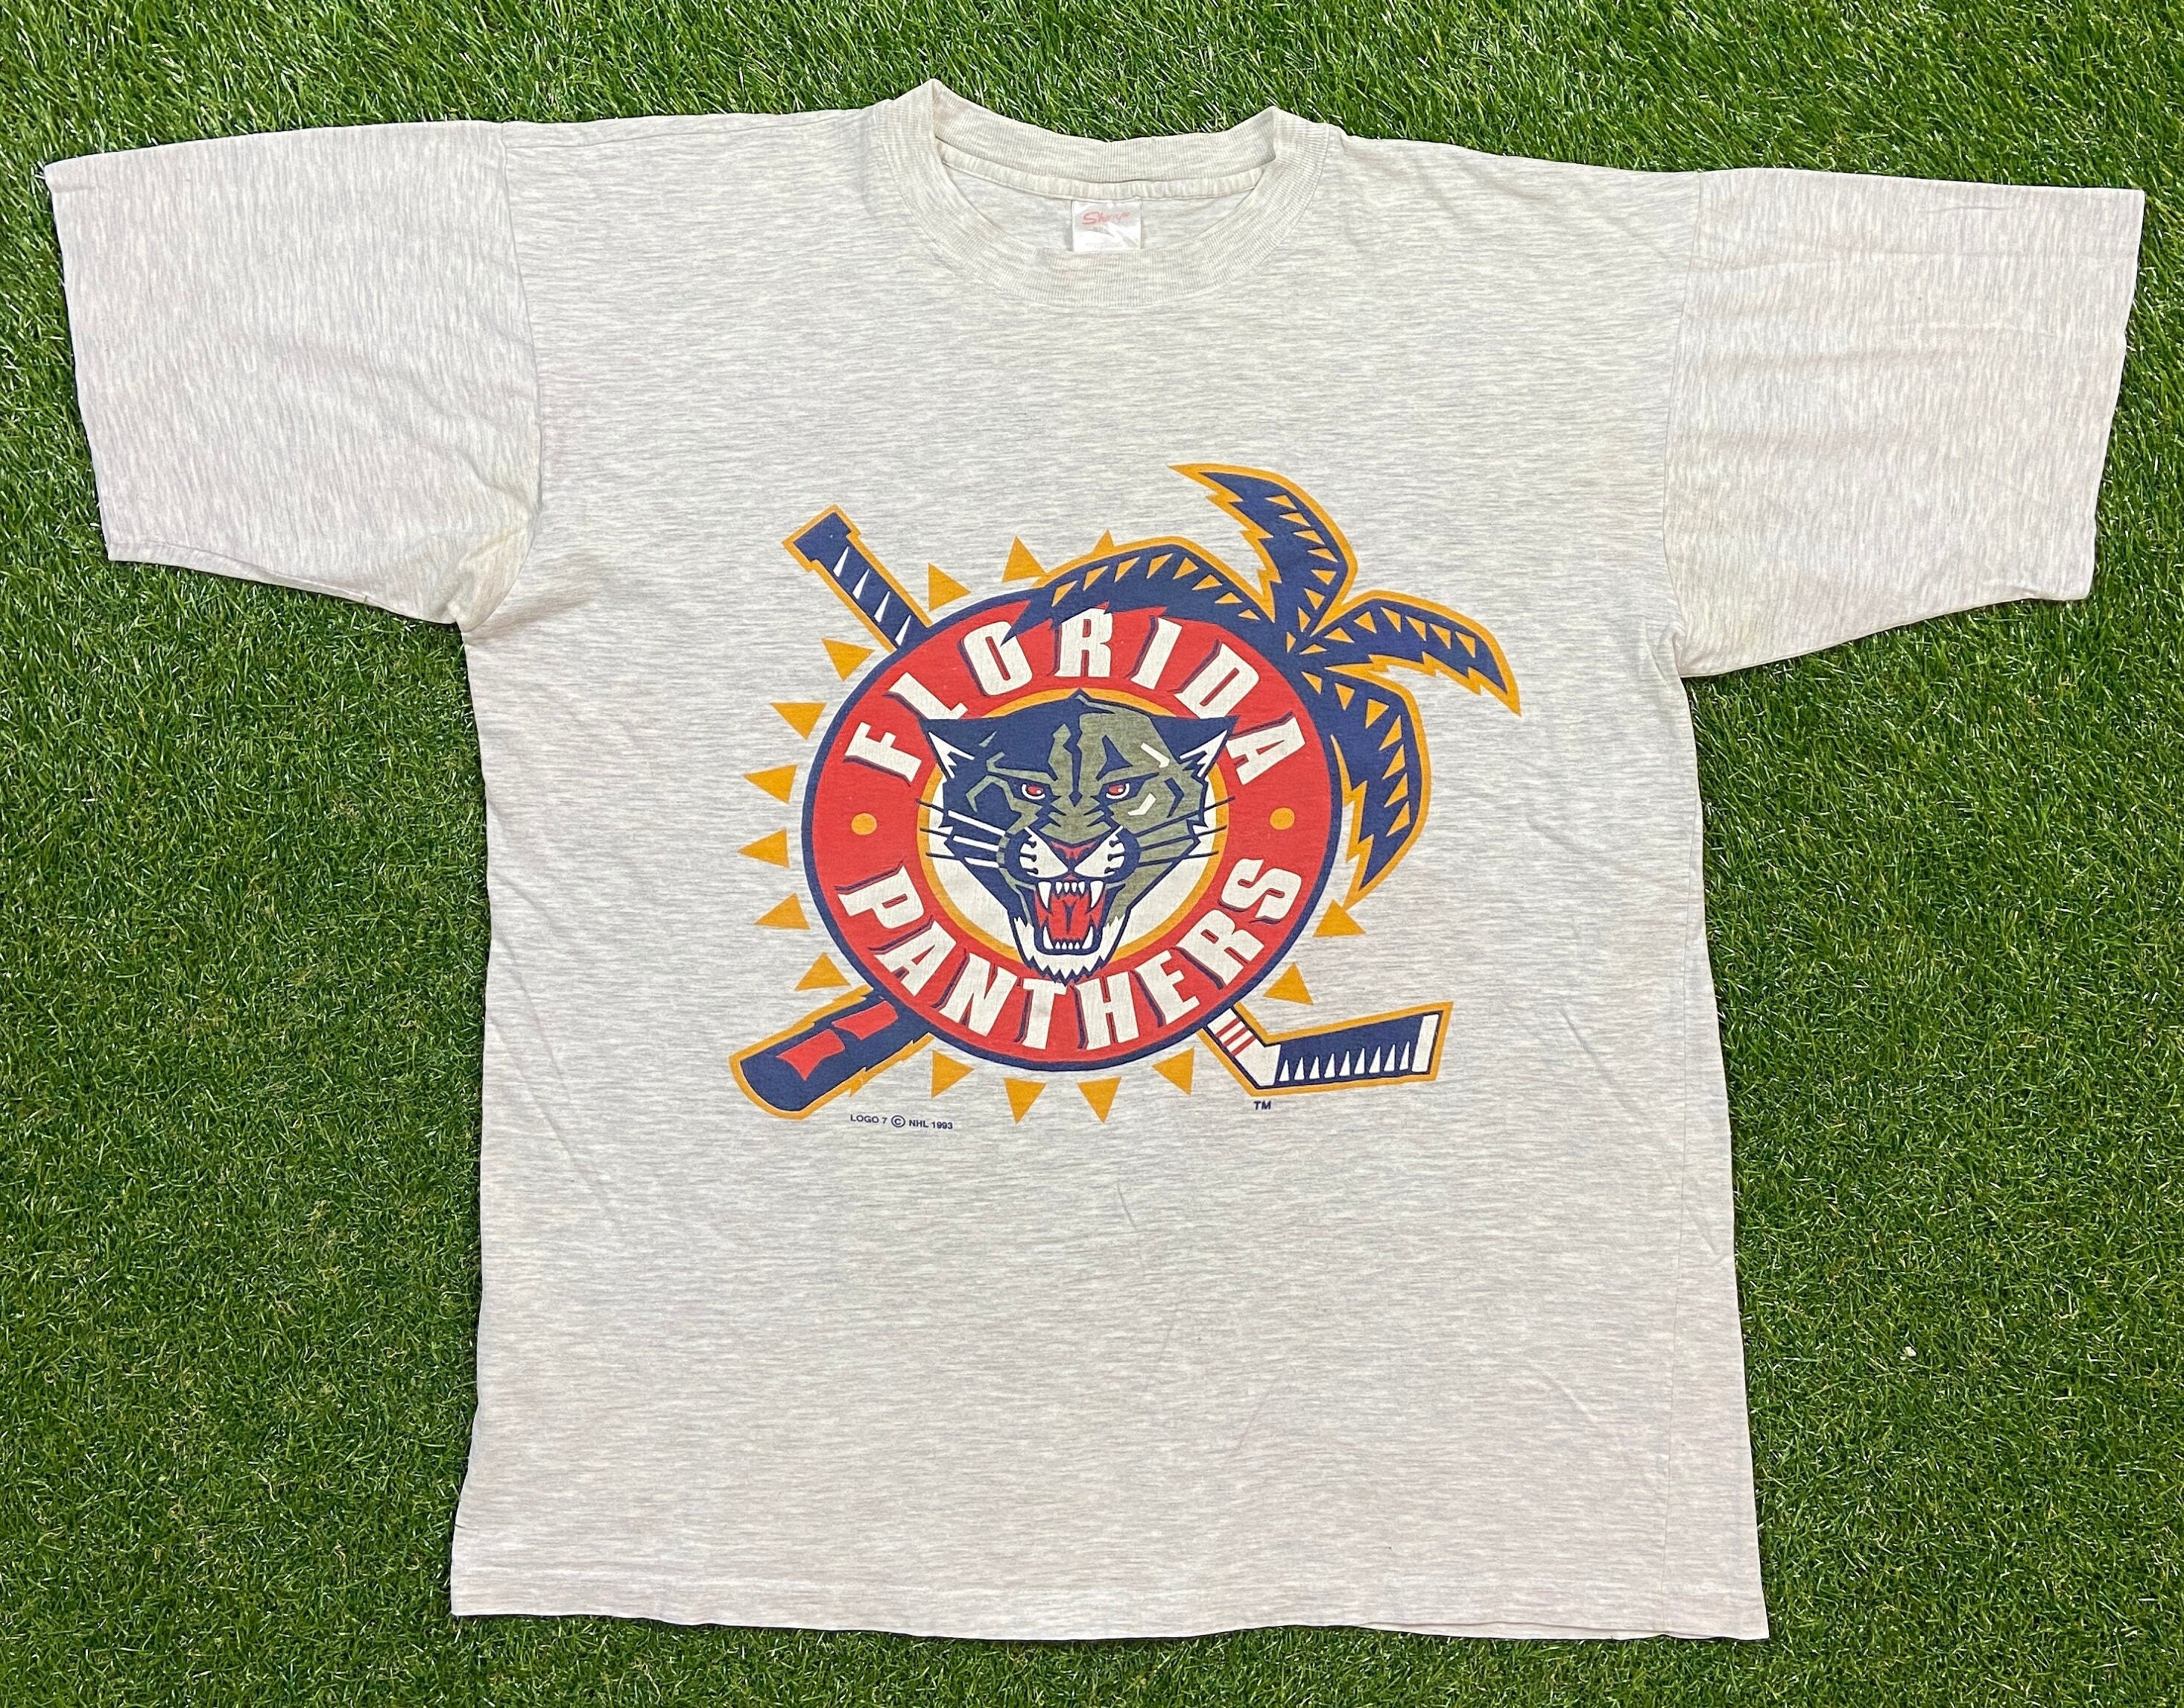 NHL Florida Panthers T-Shirts